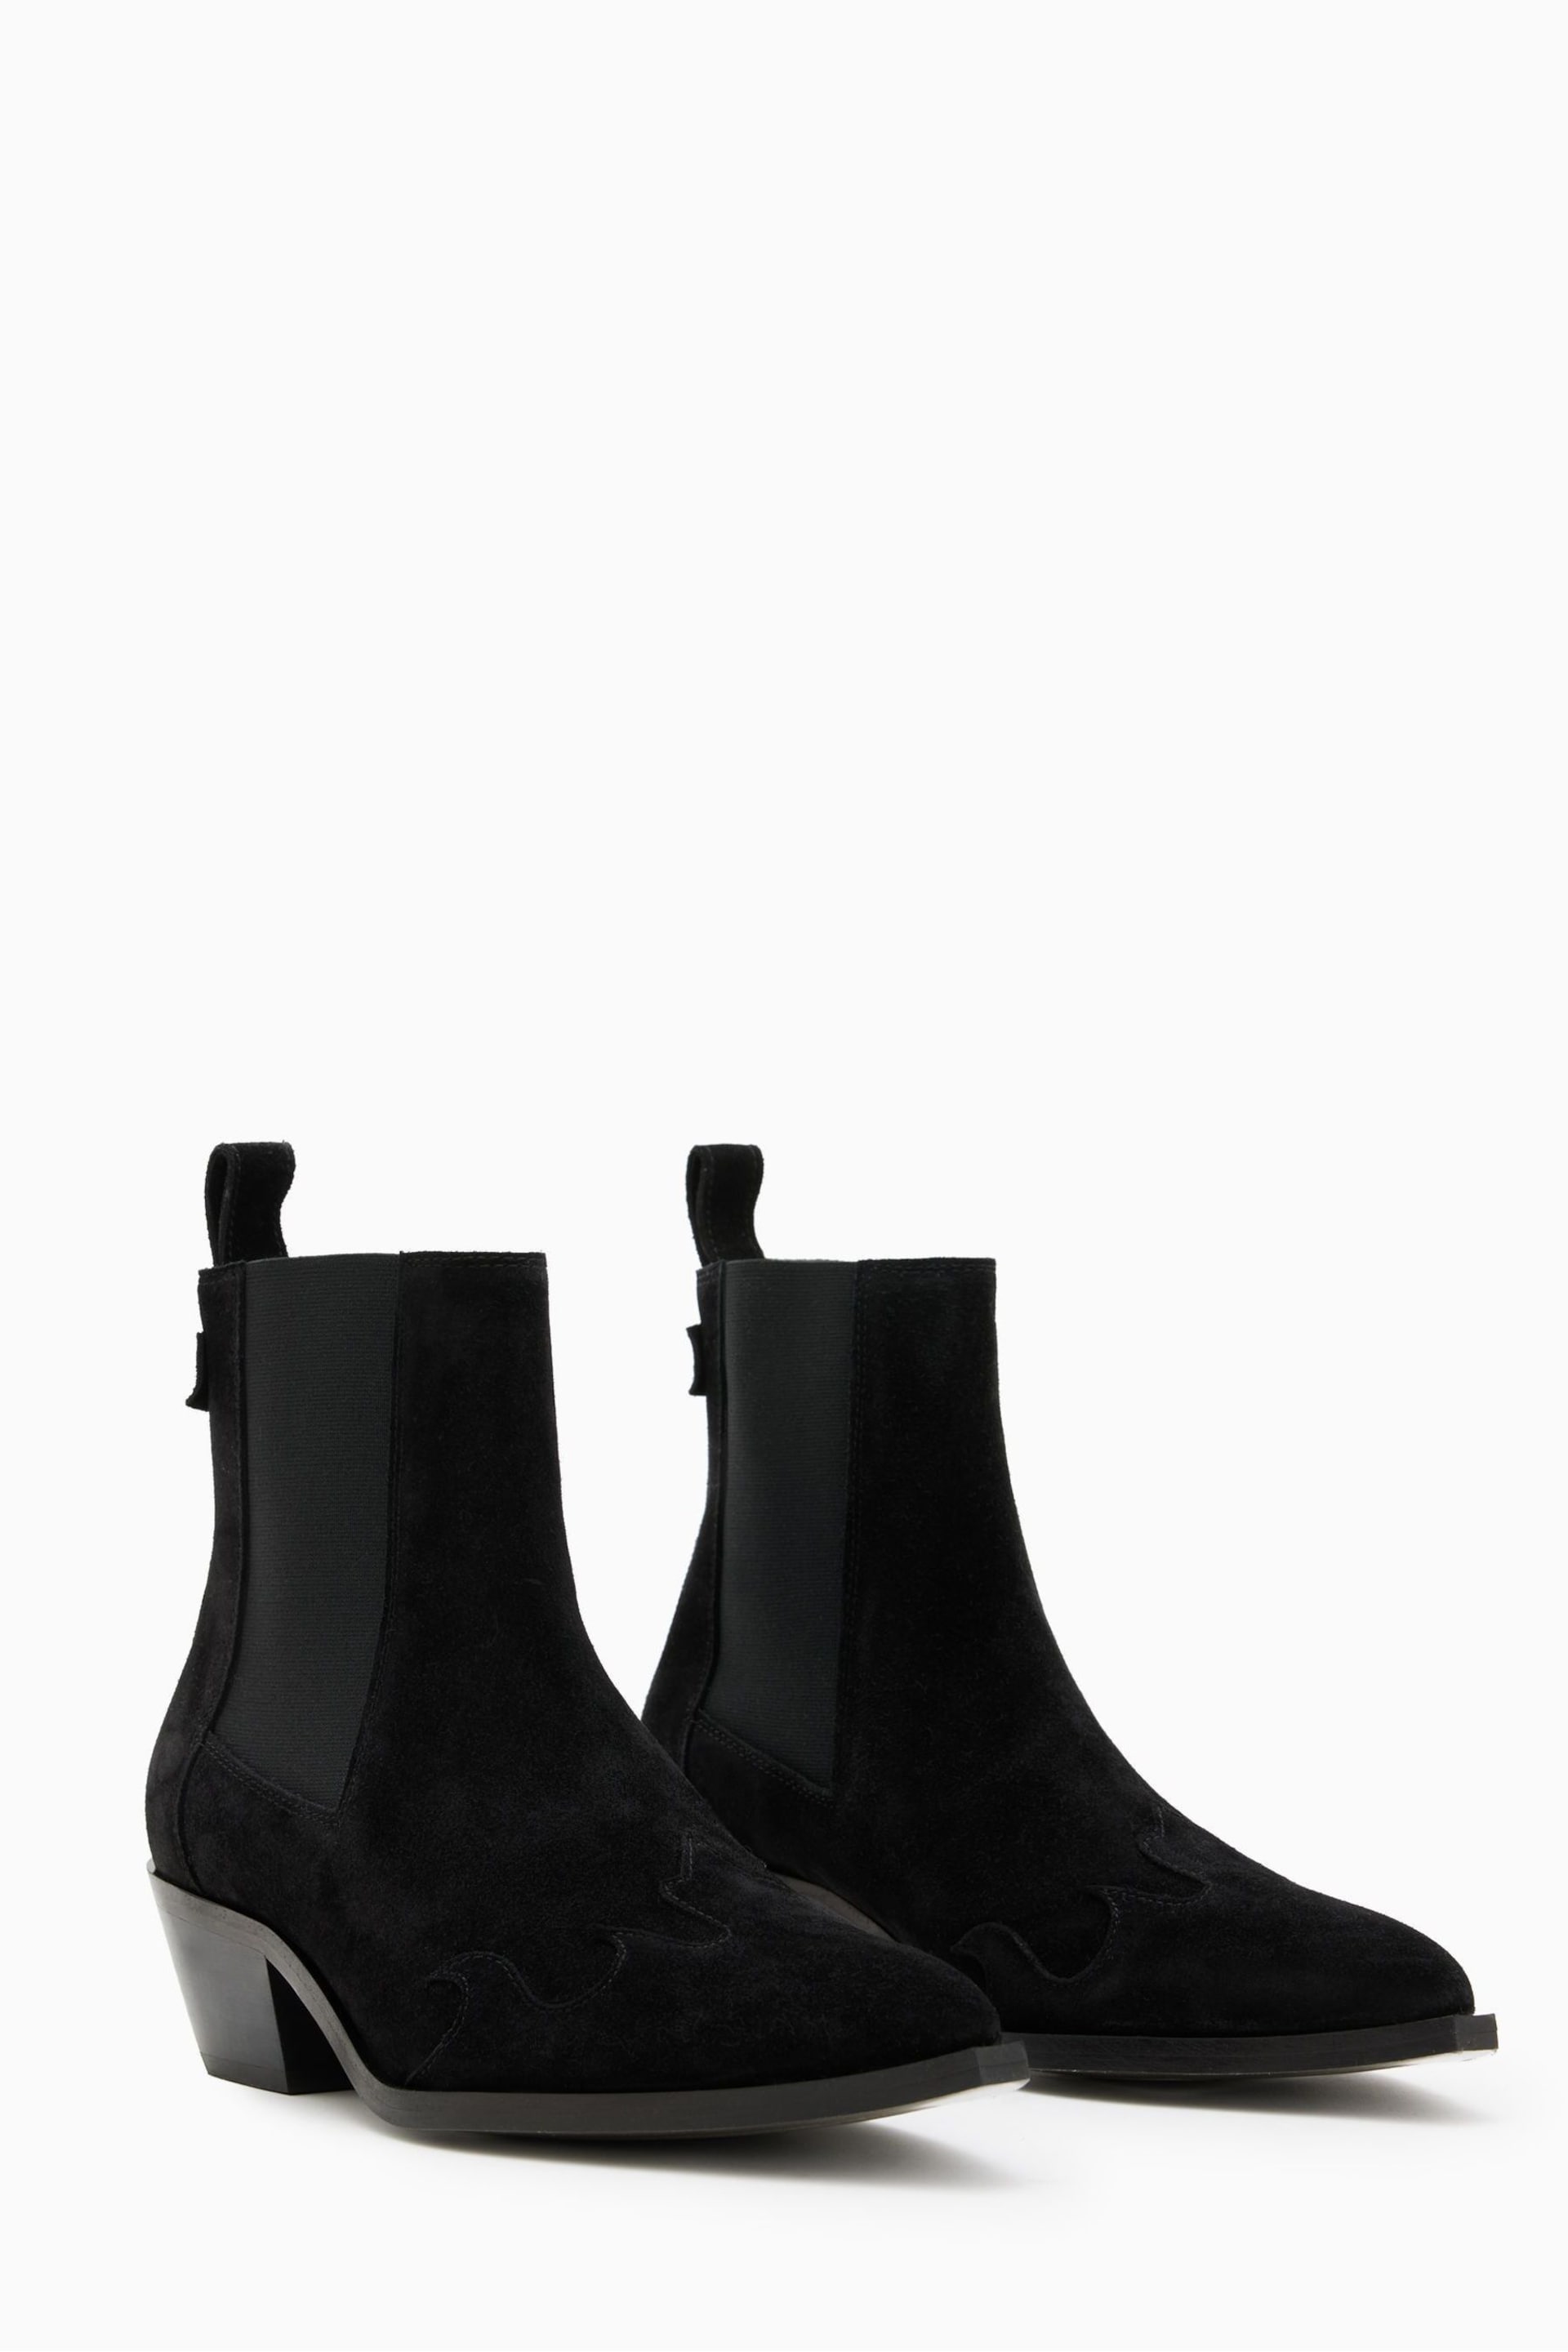 AllSaints Black Dellaware Suede Boots - Image 2 of 5